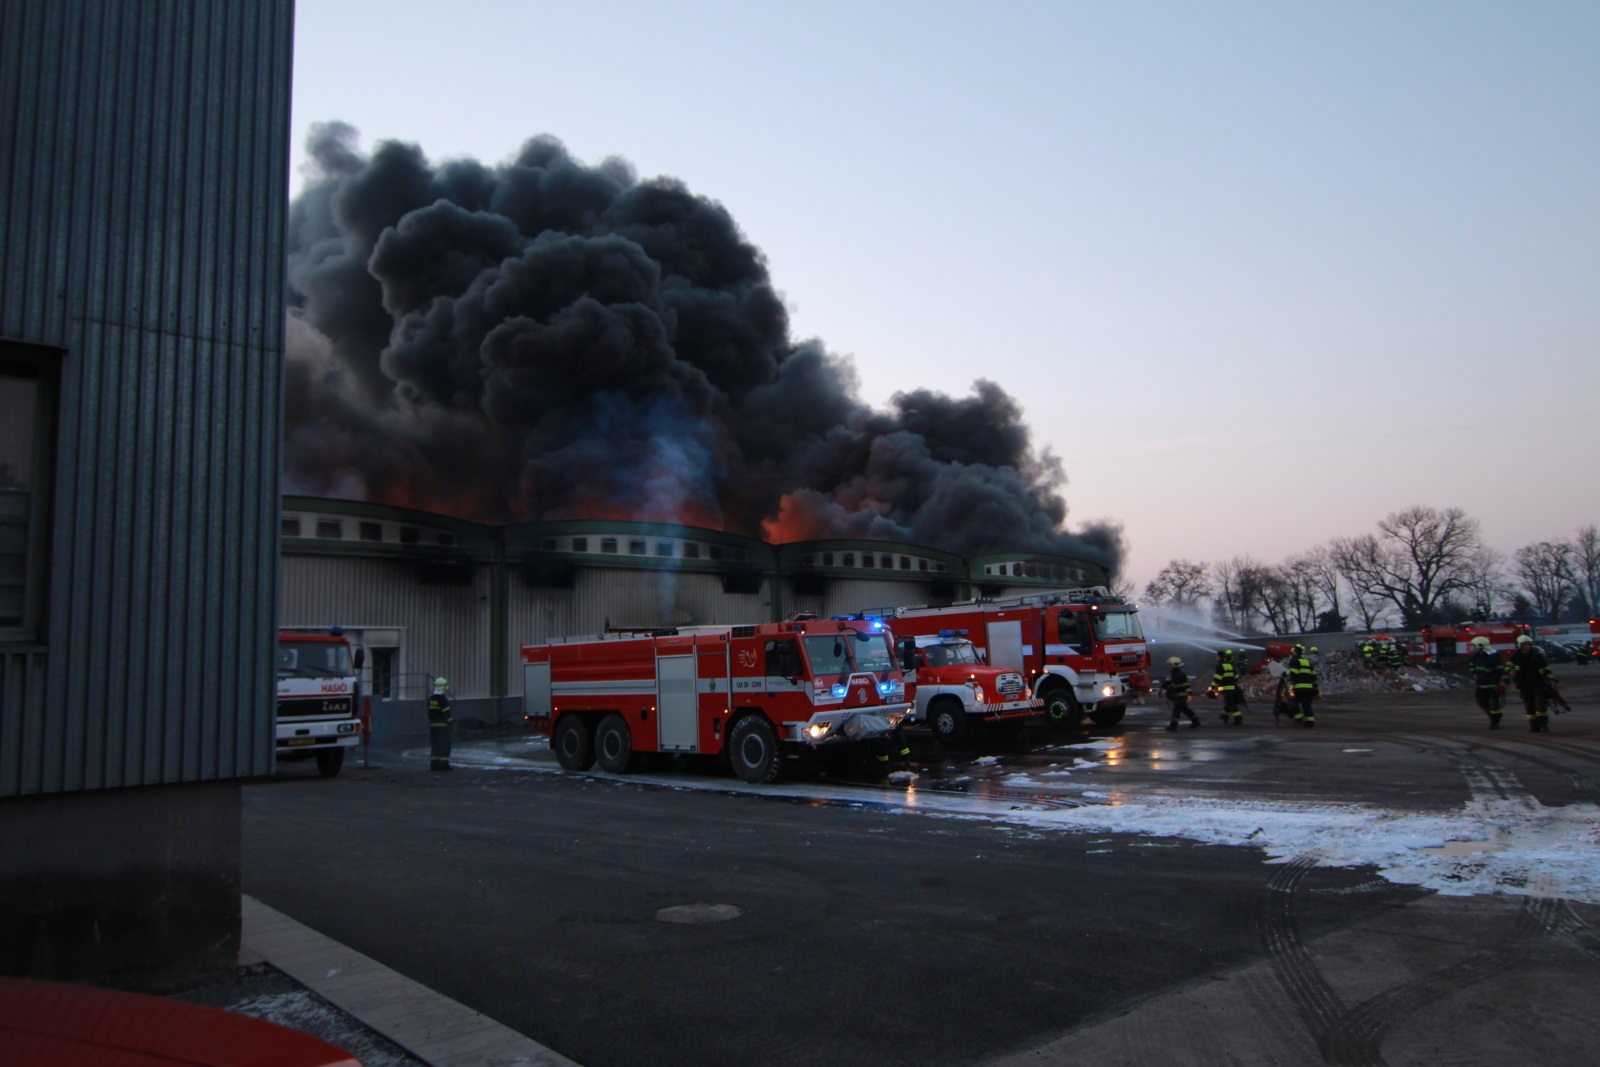 SČK_Požár mrazíren v Mochově_z budovy stoupá hustý černý kouř, před ní stojí hasičská technika a hasiči, kteří zasahují.jpg